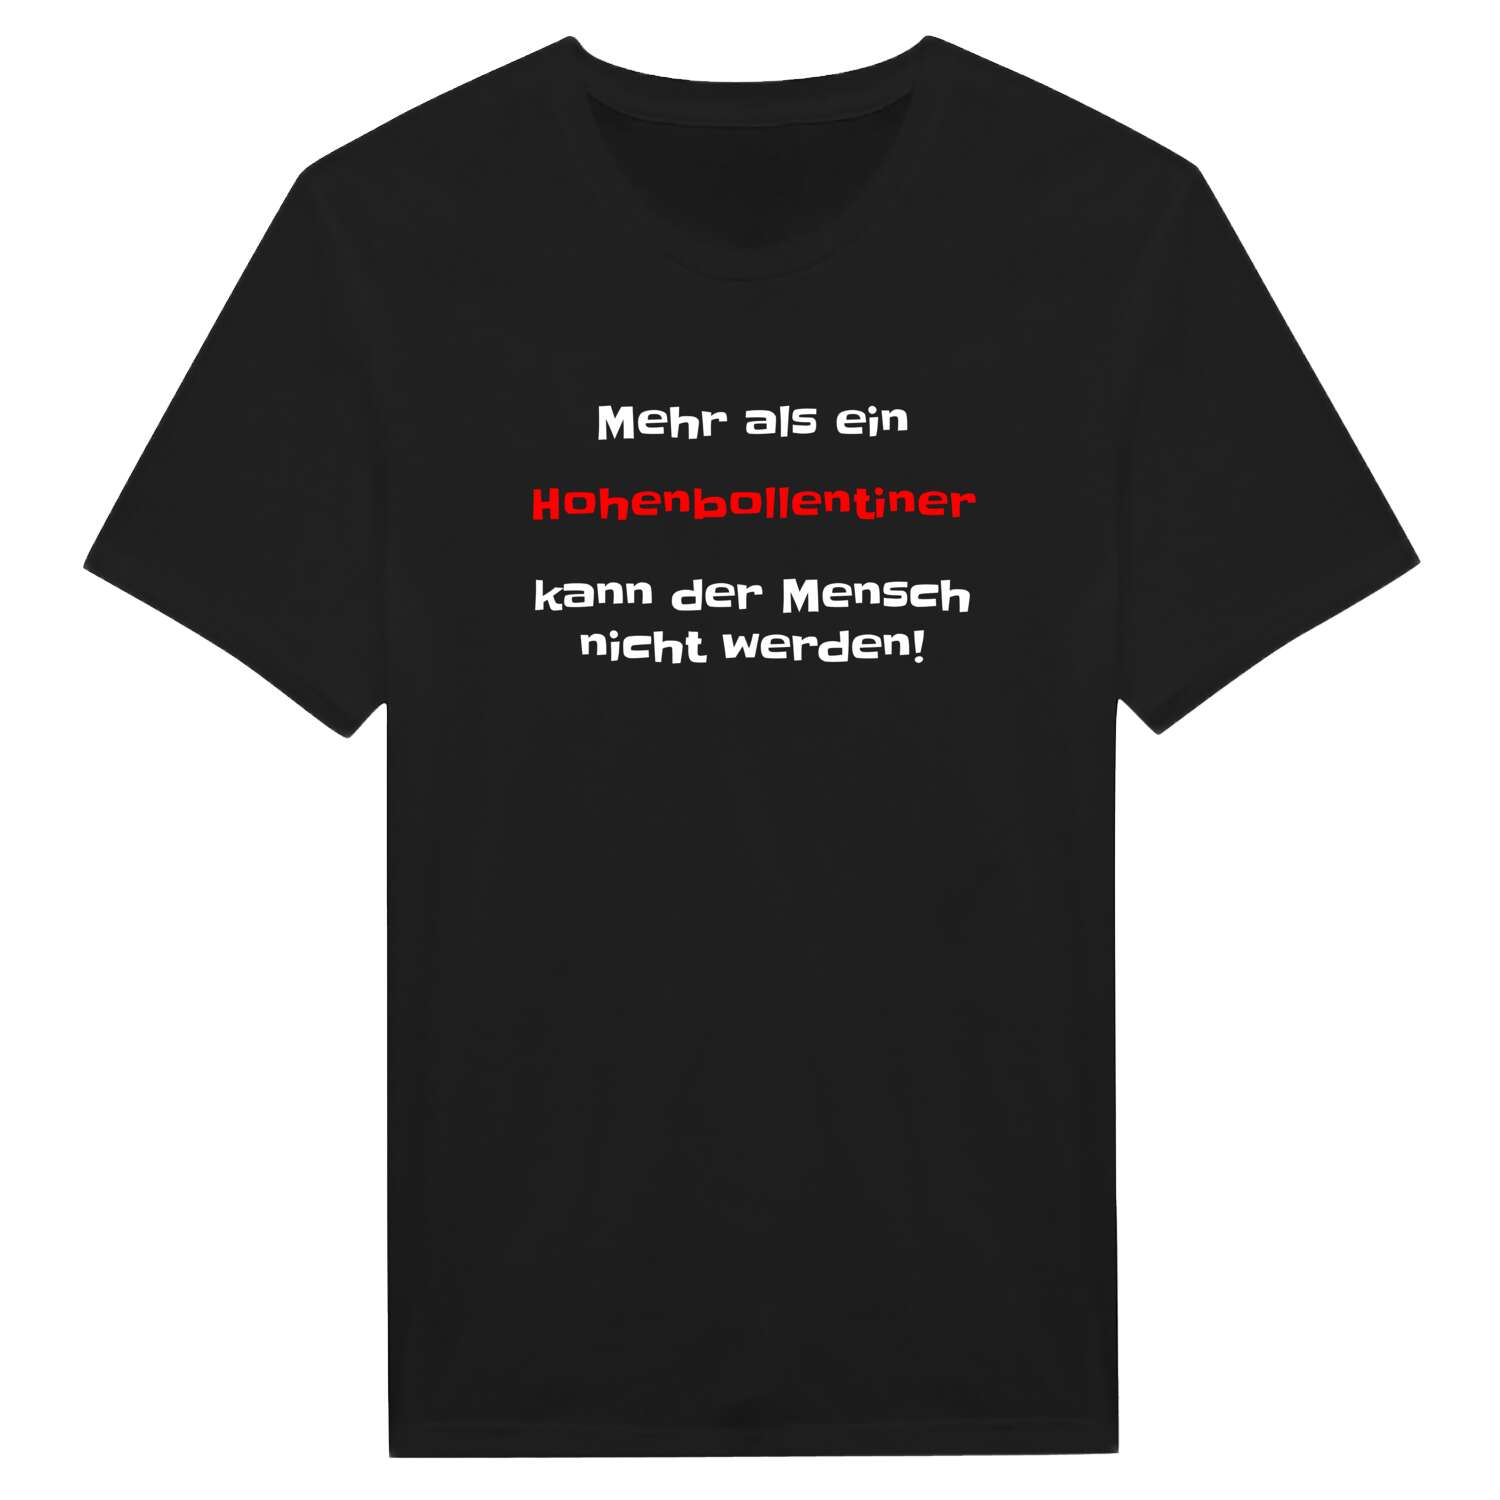 Hohenbollentin T-Shirt »Mehr als ein«